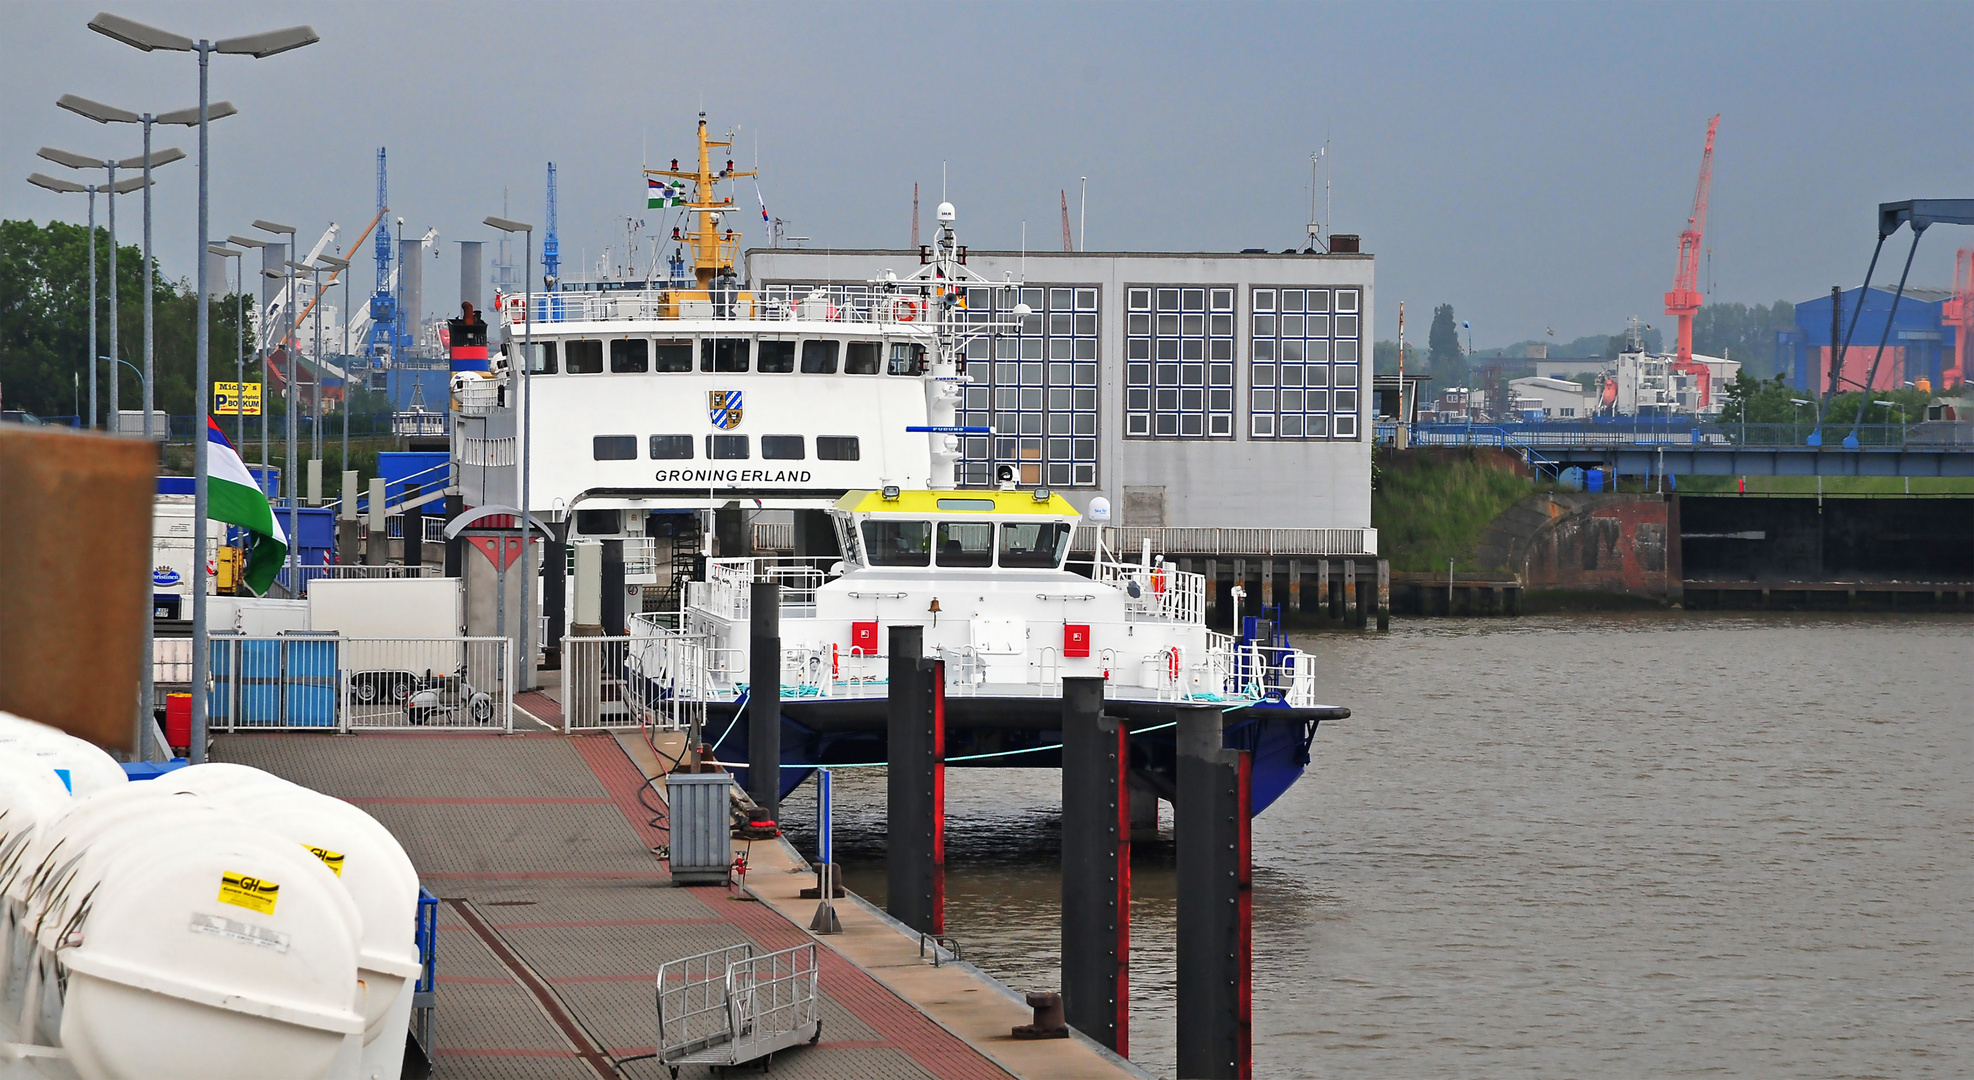 Emden Außenhafen im Juni 2010 mit Borkumfähre "Groningerland"